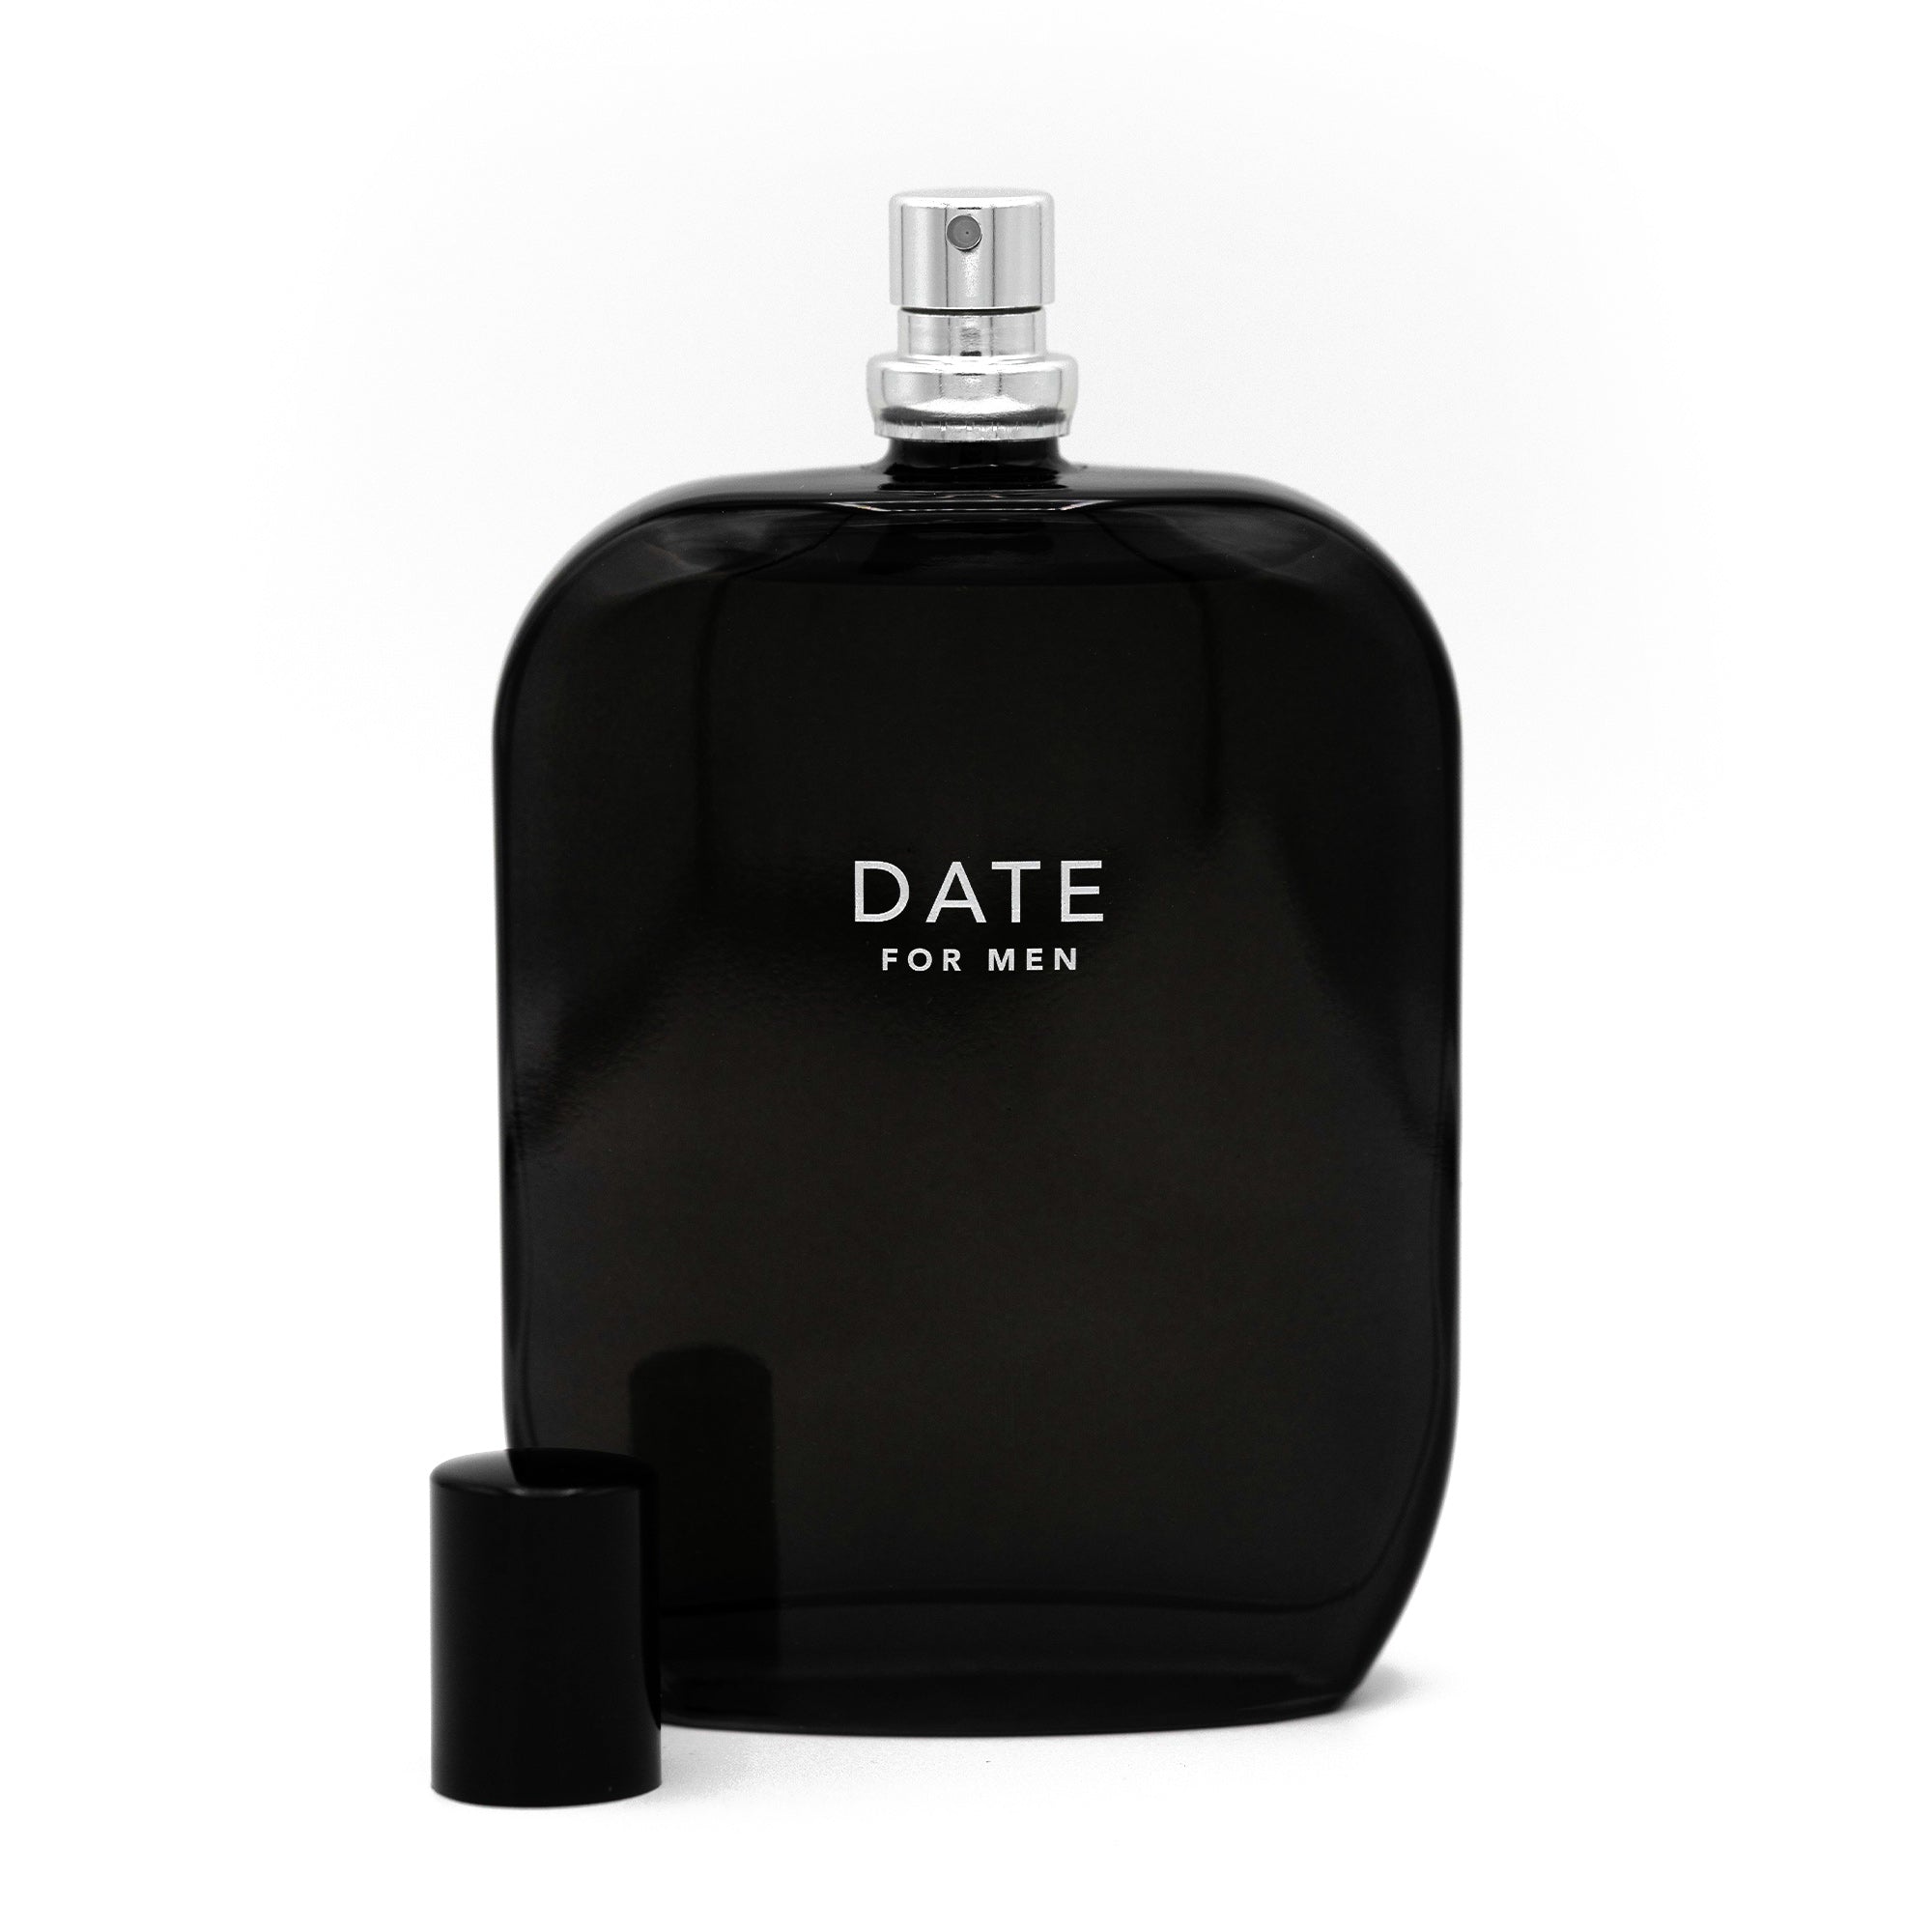 DATE for Men fragrance bottle 100ml open cap